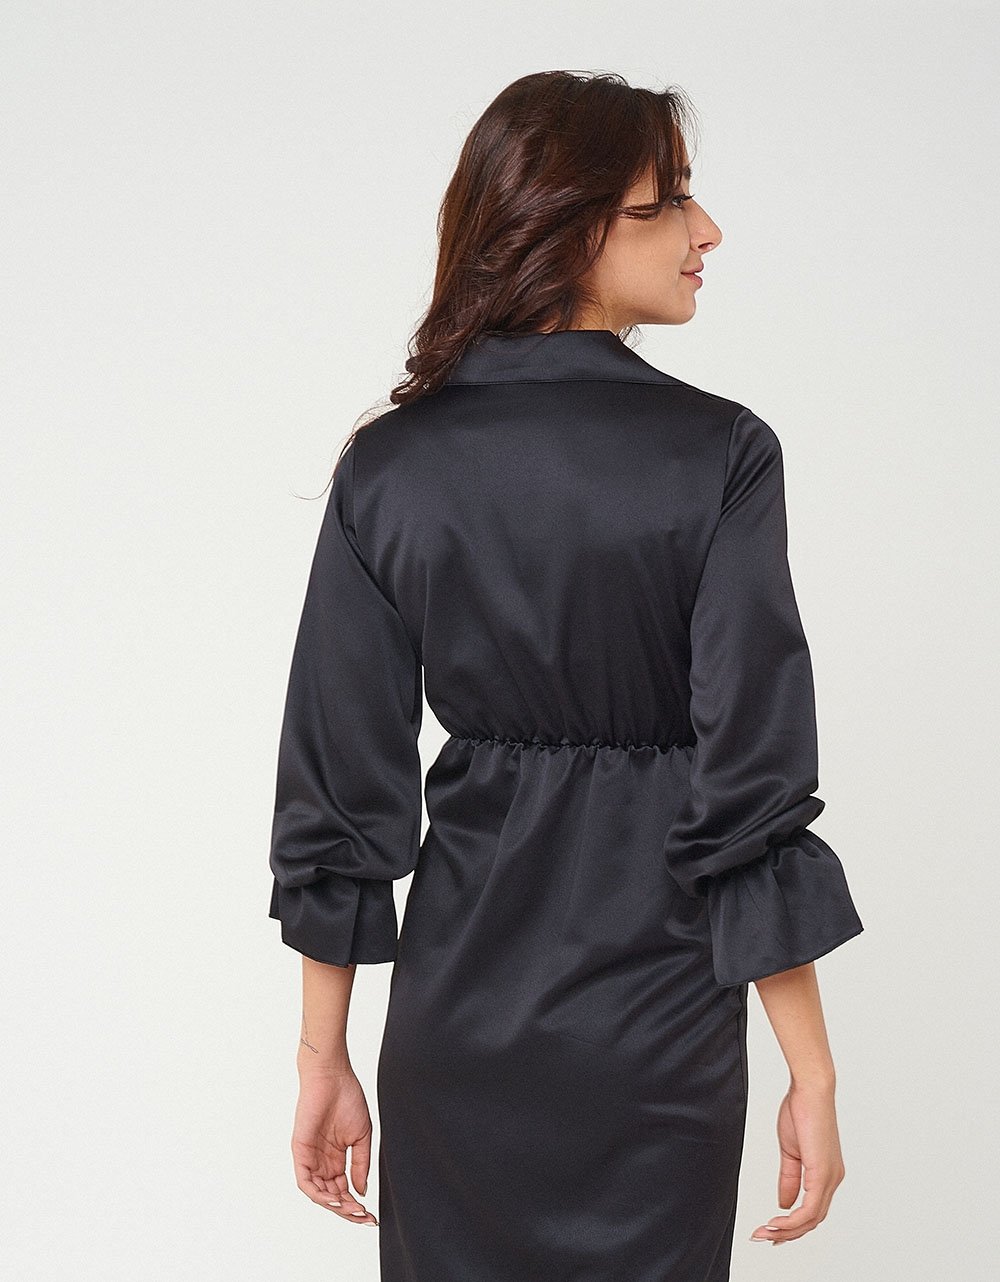 Εικόνα από Σατέν midi φόρεμα με ιδιαίτερο δέσιμο Μαύρο